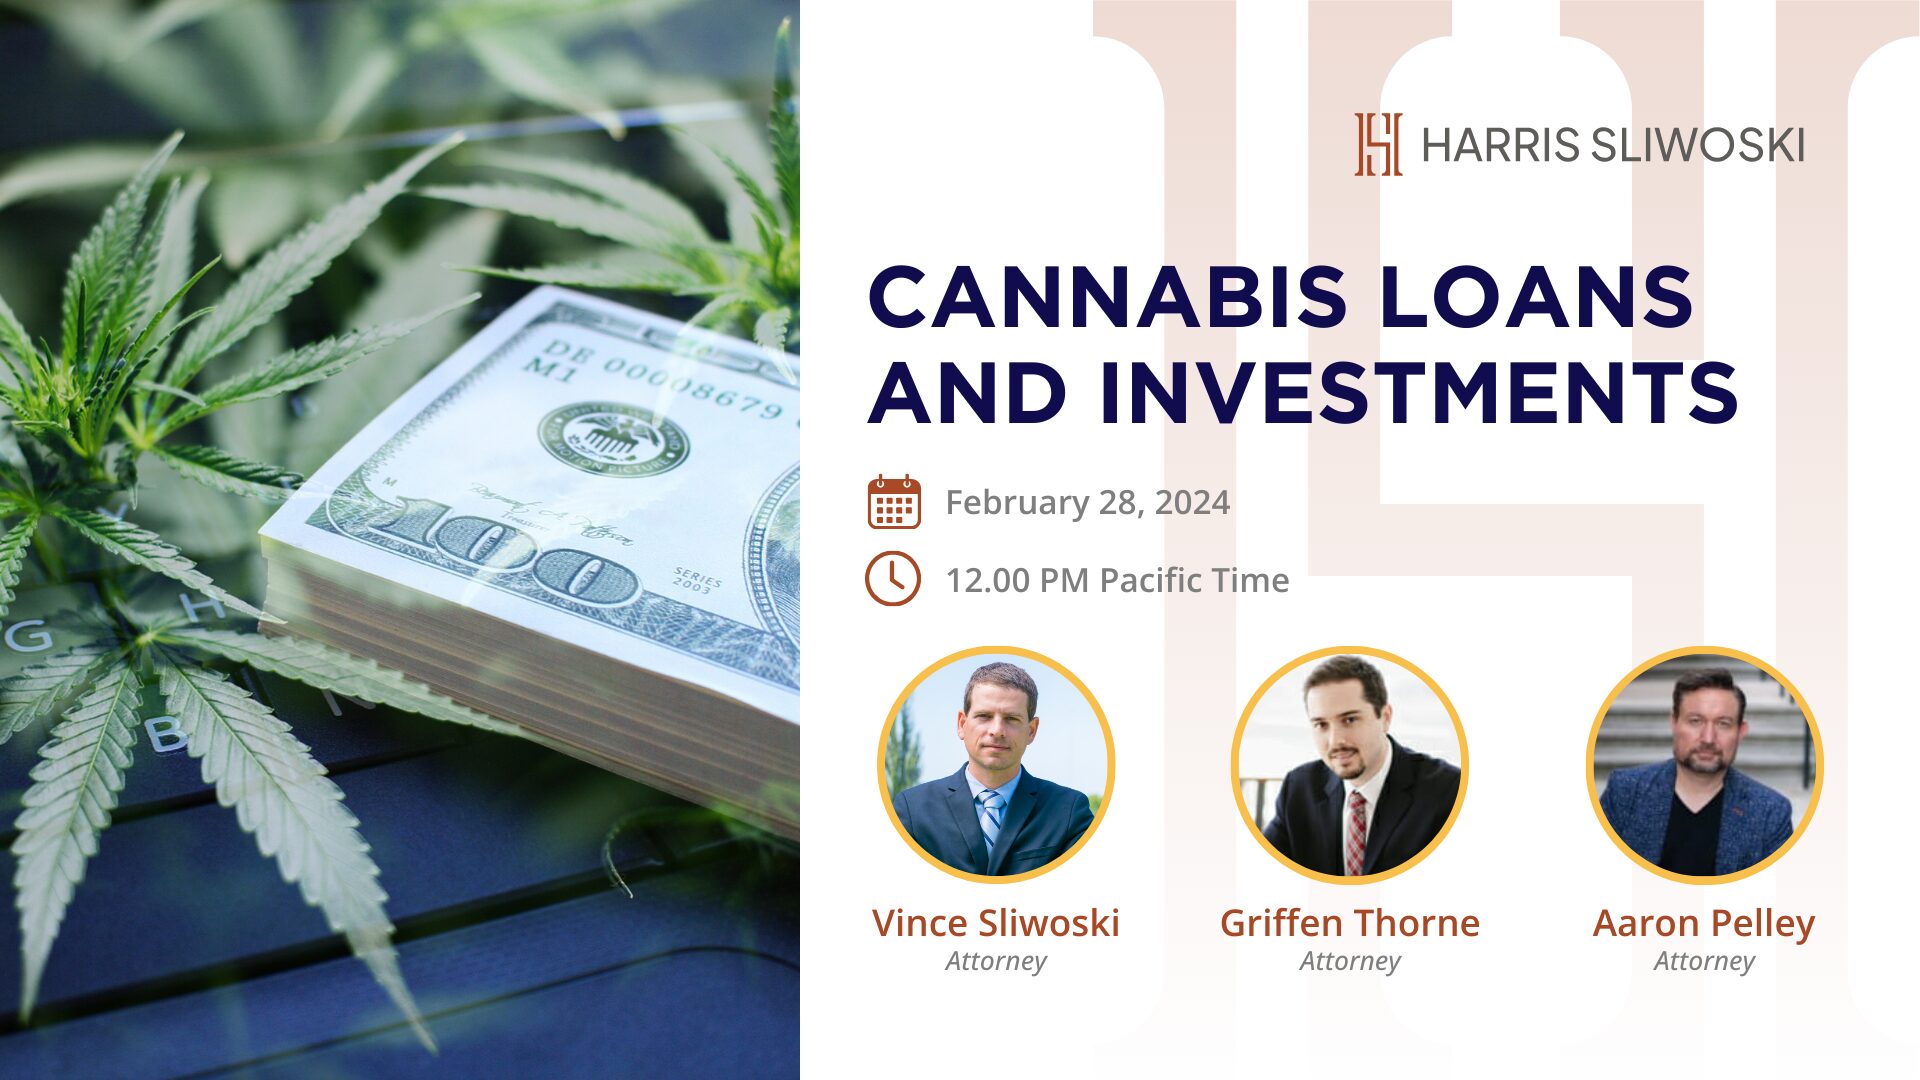 БЕЗКОШТОВНІ вебінар про позики та інвестиції на марихуану: 28 лютого